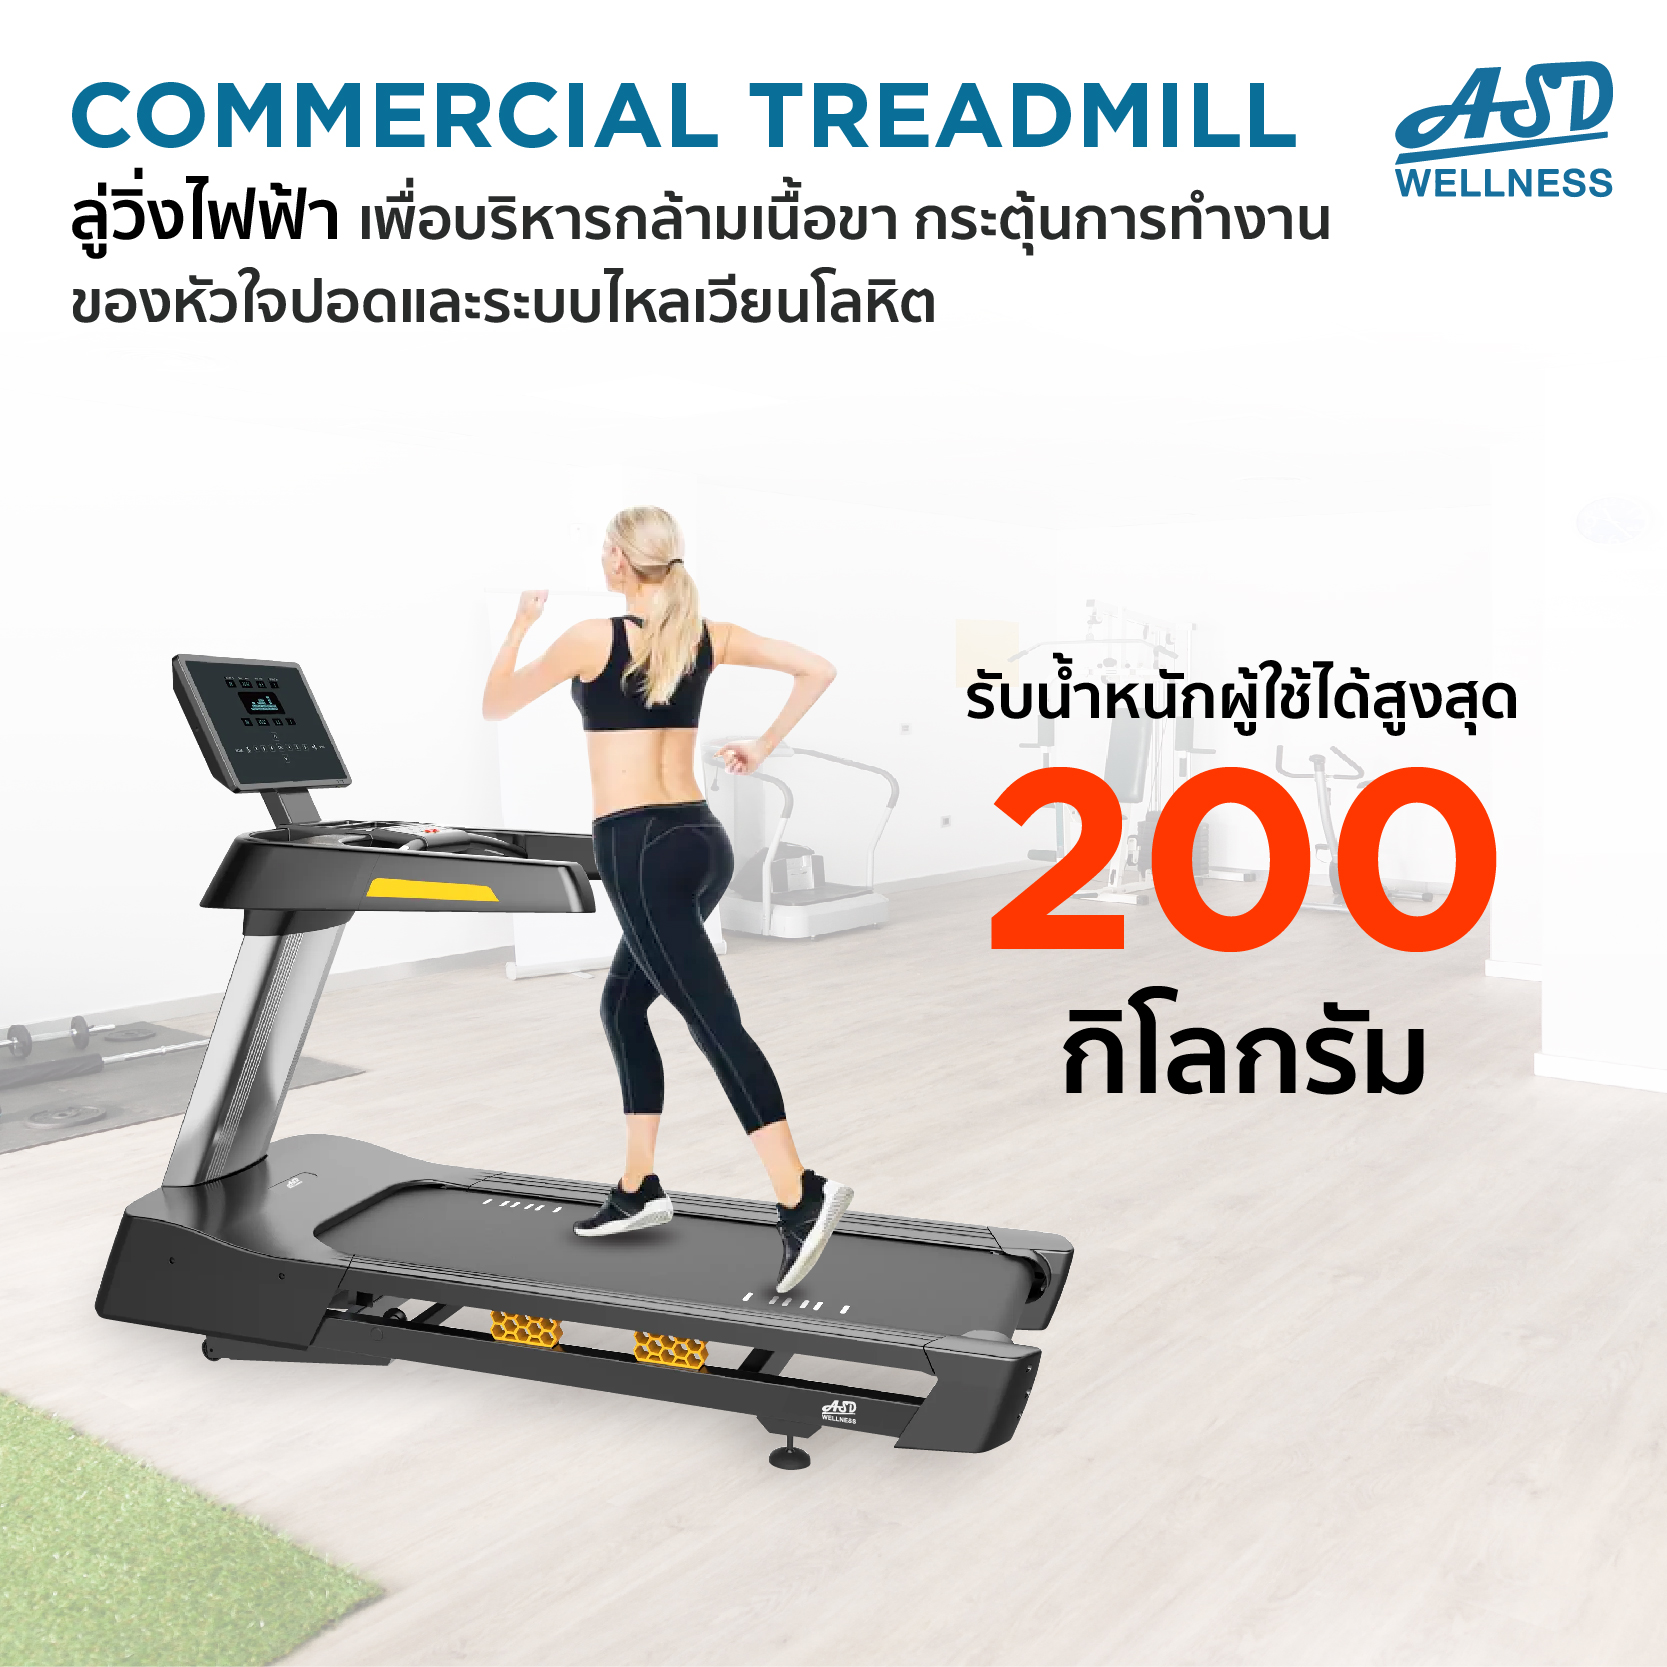 ลู่วิ่งไฟฟ้า Commercial Treadmill รุ่น ASD-600A